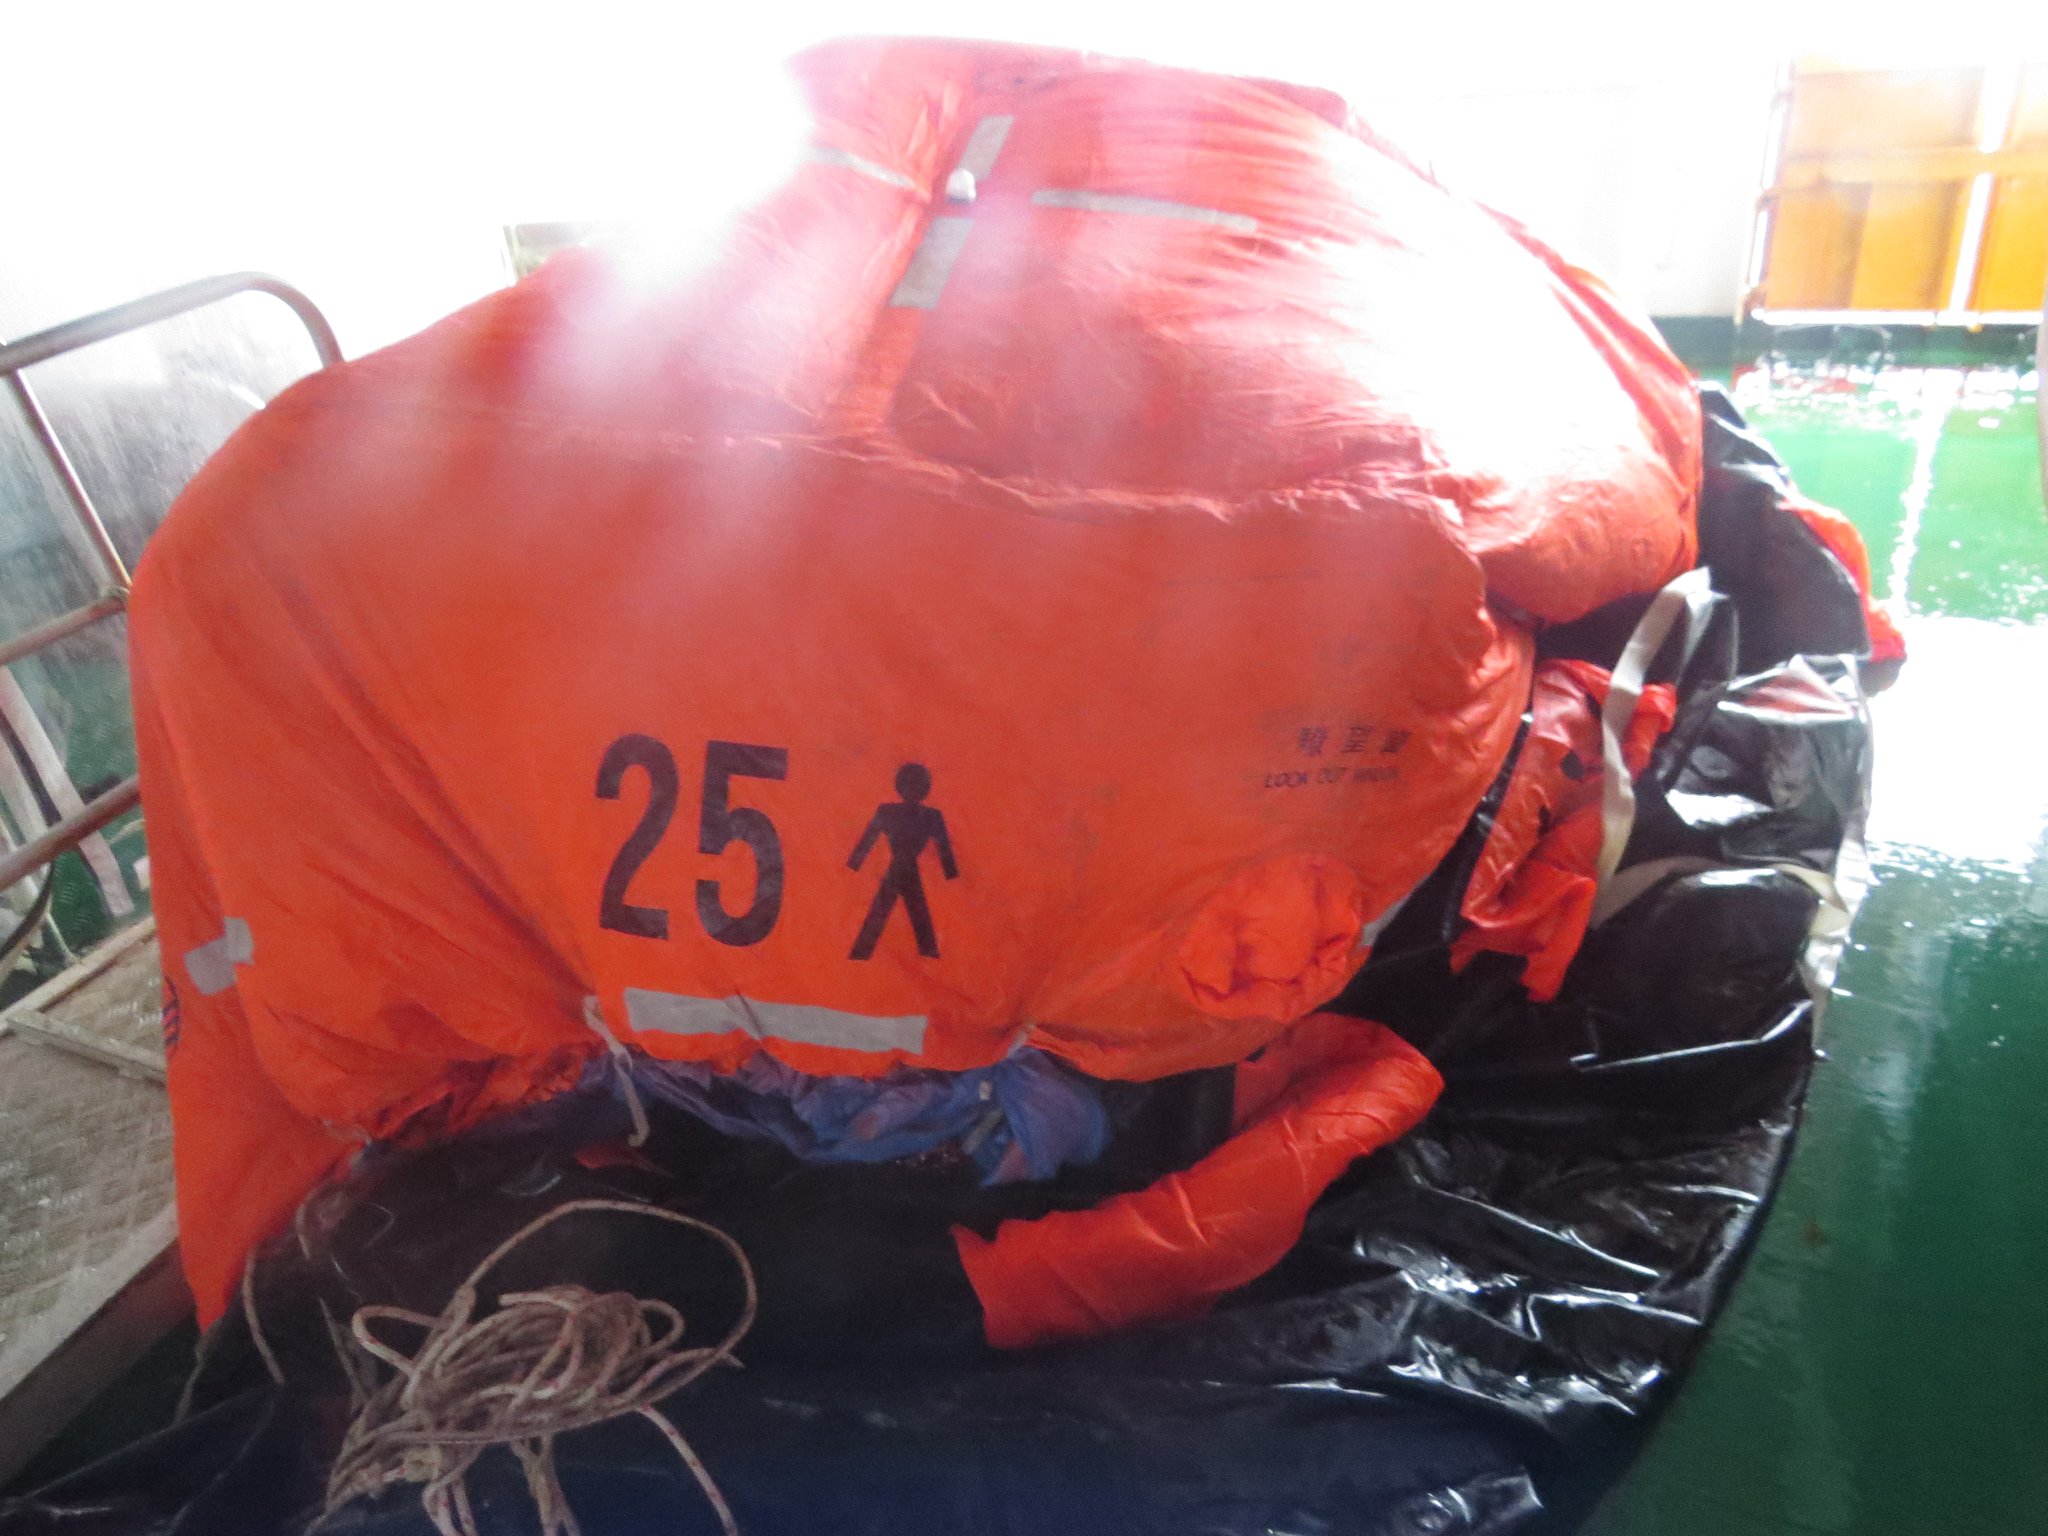 사고 화물선 인근에서 구명벌 3대와 구명정 2대가 발견됐지만, 탑승자는 없었던 것으로 전해졌다. 사진 제주해경